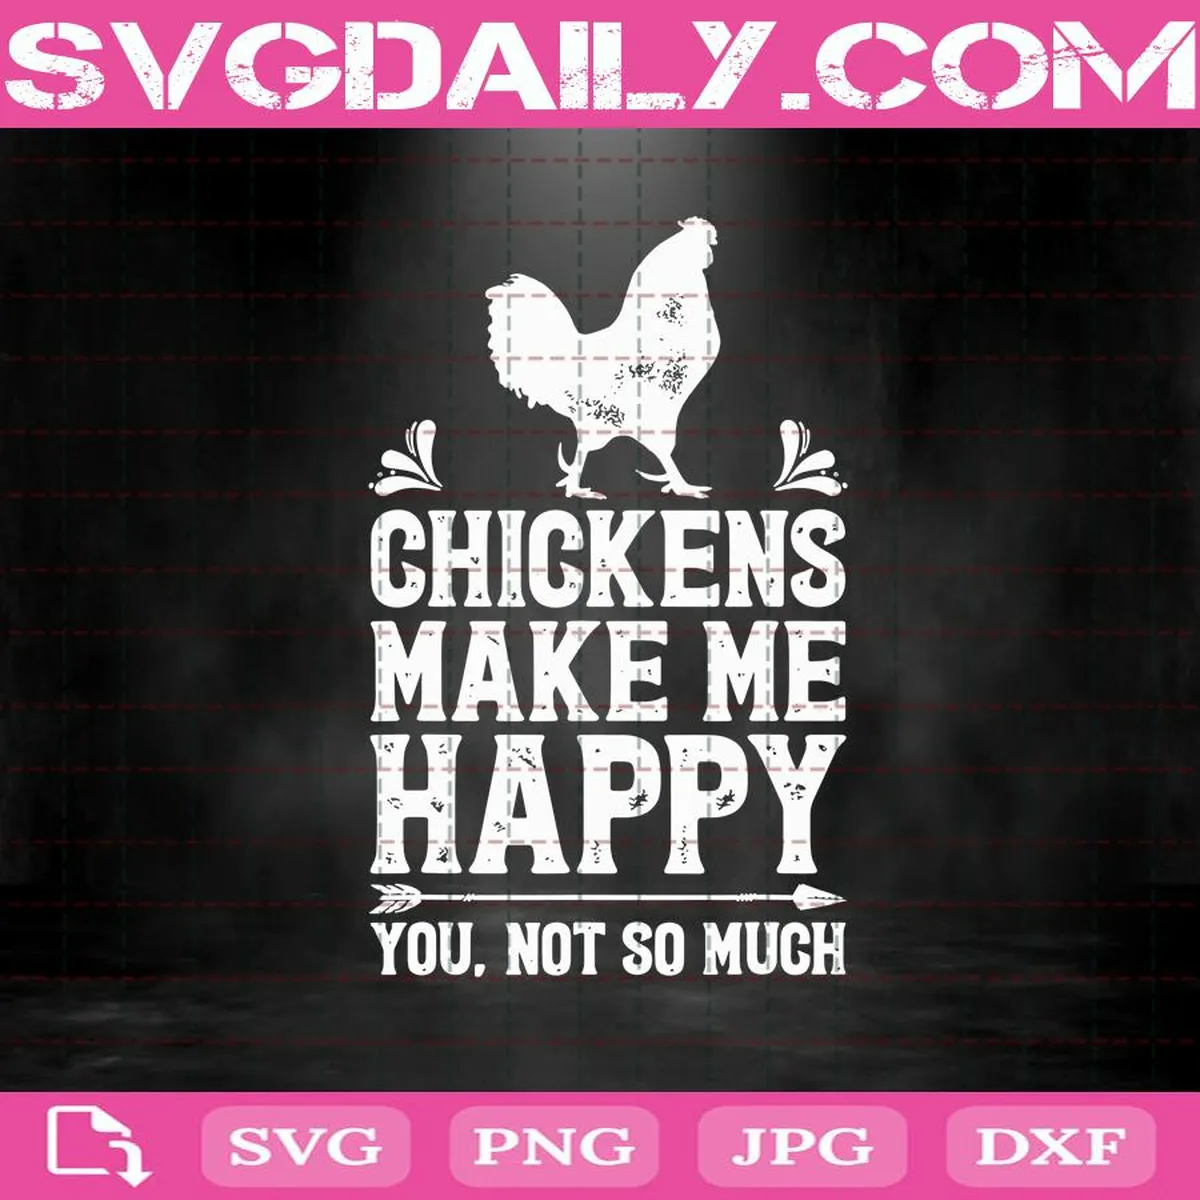 Chickens Make Me Happy Svg, Chicken Svg, Farmer Svg, Chicken Farmer Svg, Chicken Lover Svg, Chicken Lover Gifts Svg